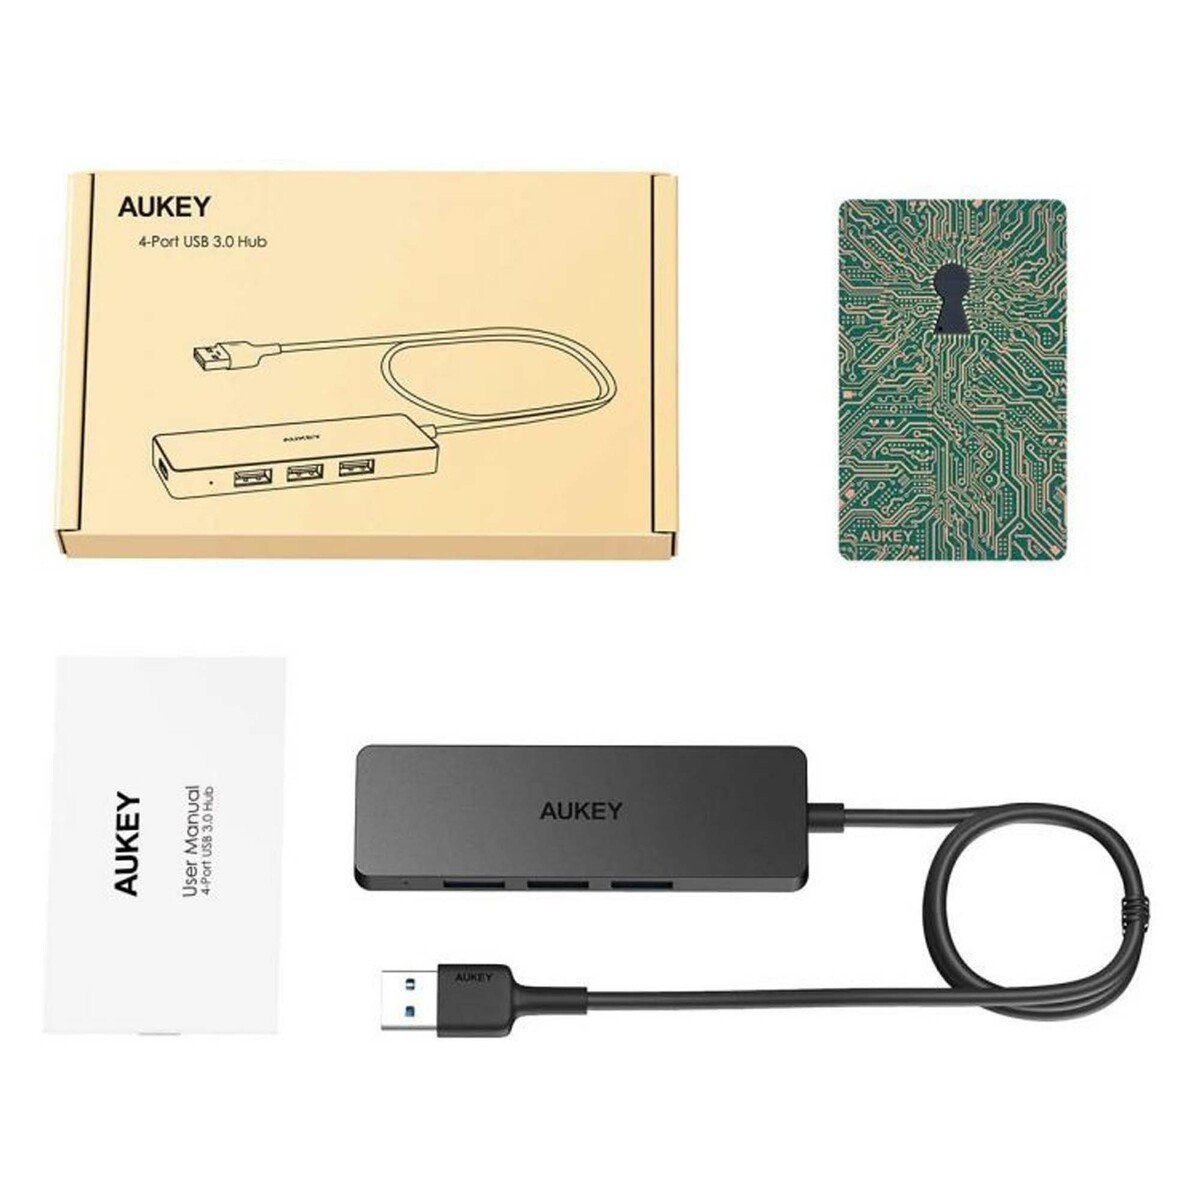 Aukey 4Port USB 3.0 Hub CB-H37